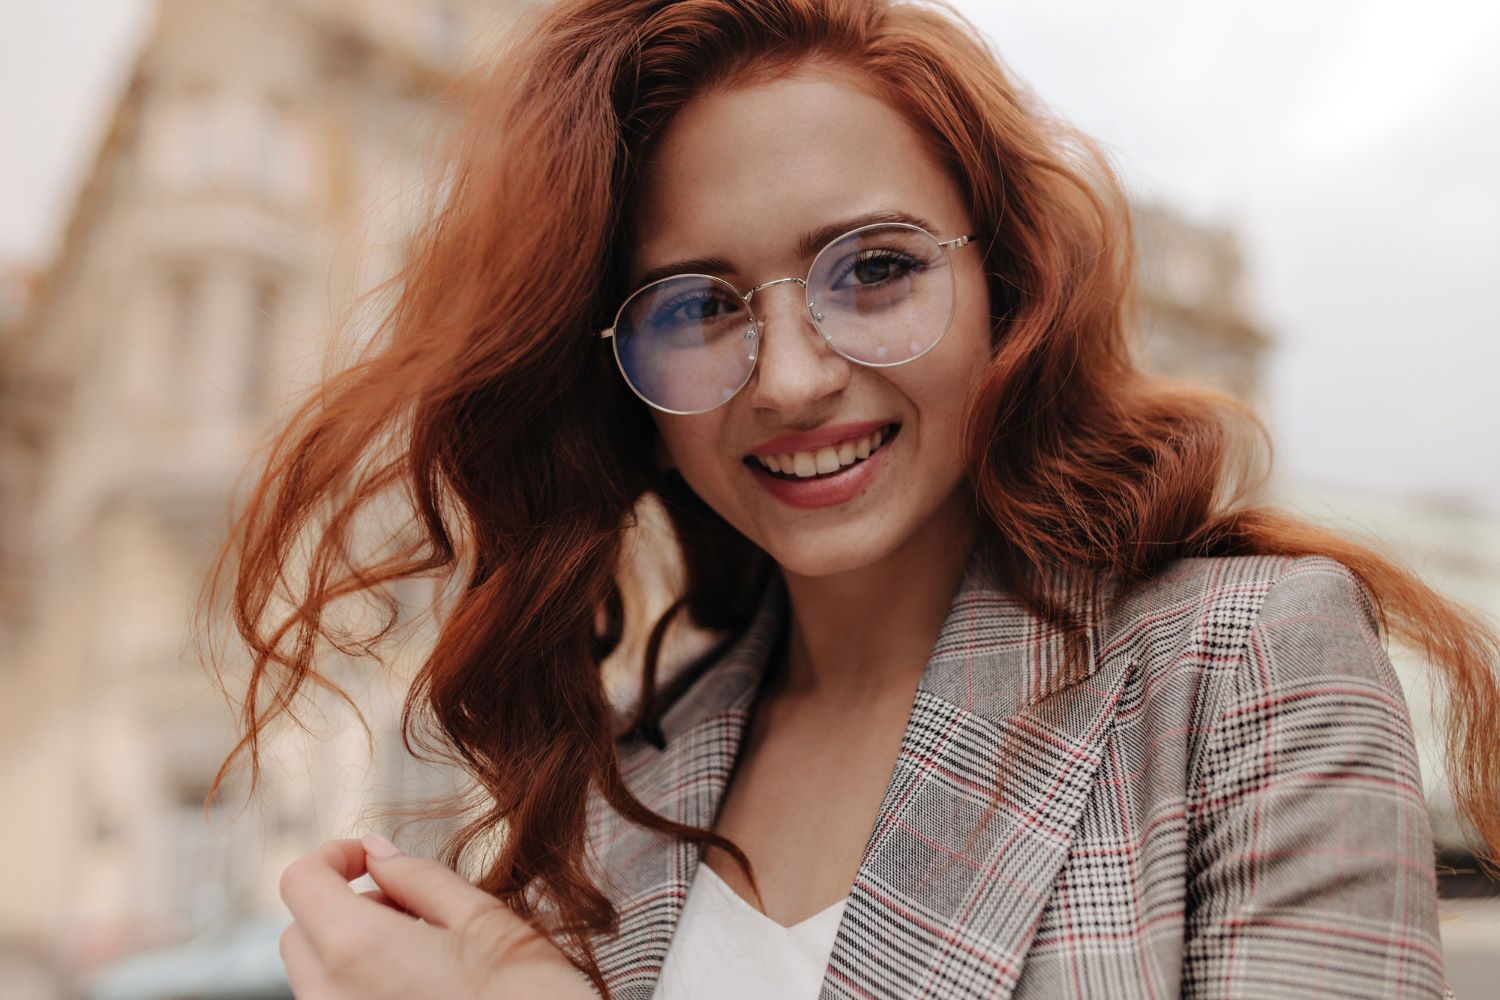 Każda kobieta wie, że dobre okulary korekcyjne to podstawa. Oprócz funkcjonalności, ważnym aspektem jest również estetyka